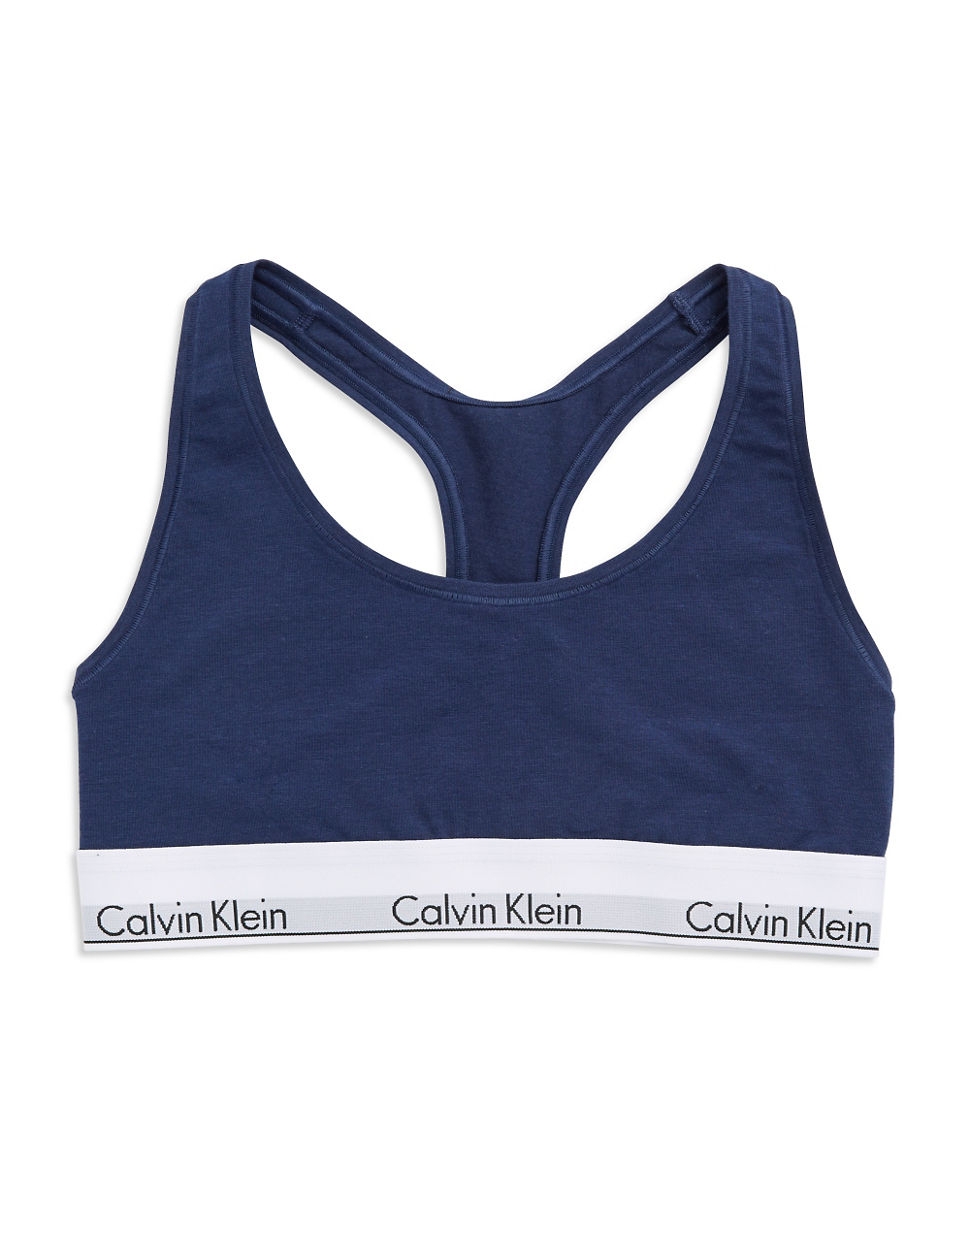 Calvin klein Modern Cotton Bralette in Blue (Coastal Blue)